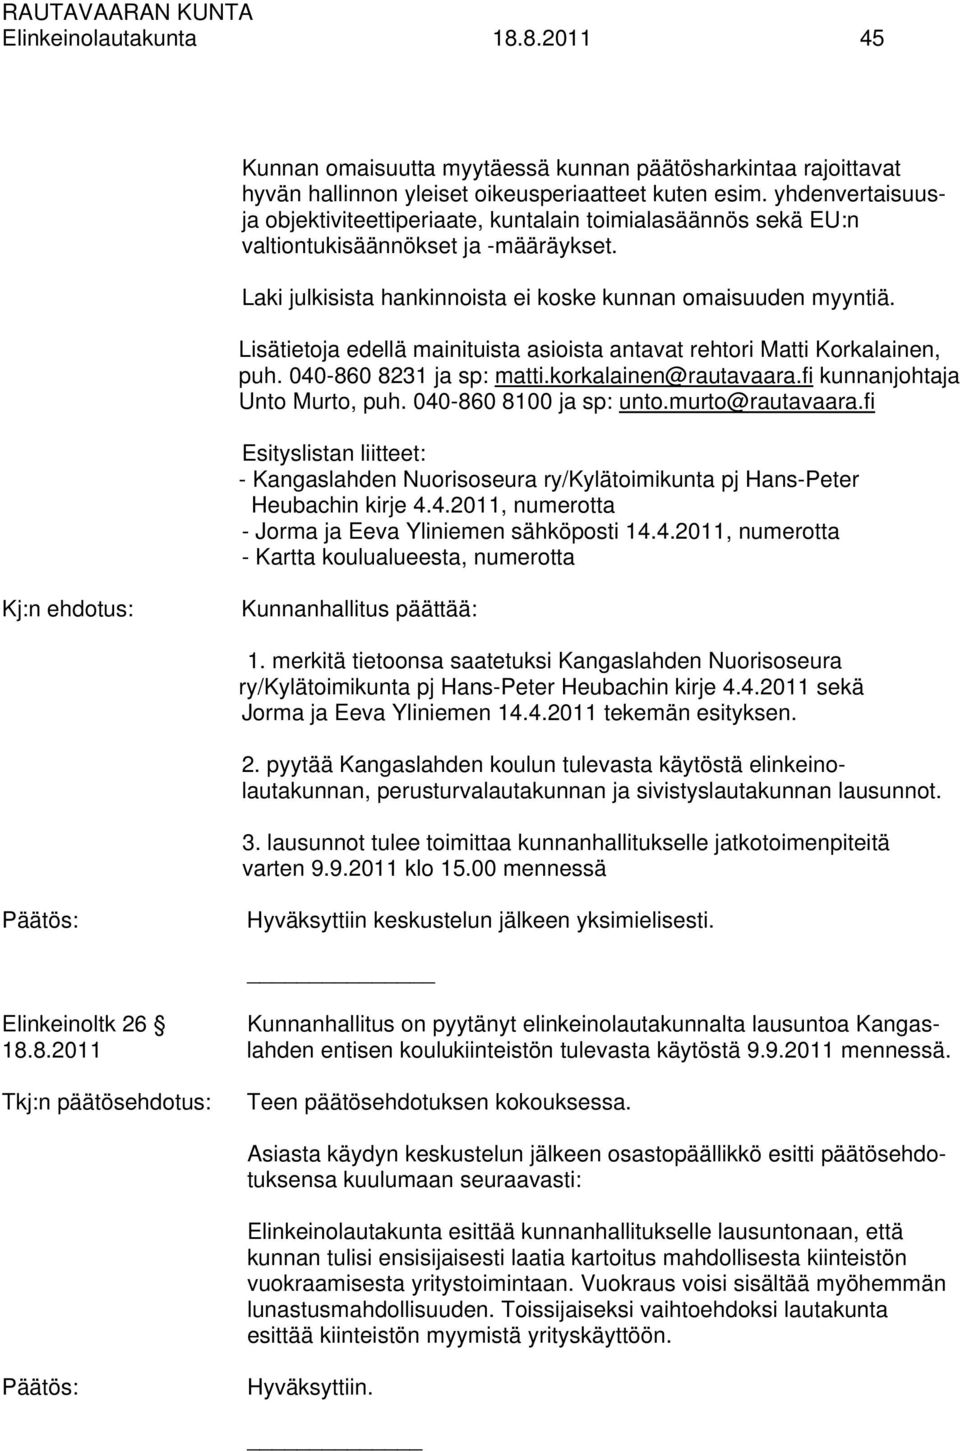 Lisätietoja edellä mainituista asioista antavat rehtori Matti Korkalainen, puh. 040-860 8231 ja sp: matti.korkalainen@rautavaara.fi kunnanjohtaja Unto Murto, puh. 040-860 8100 ja sp: unto.